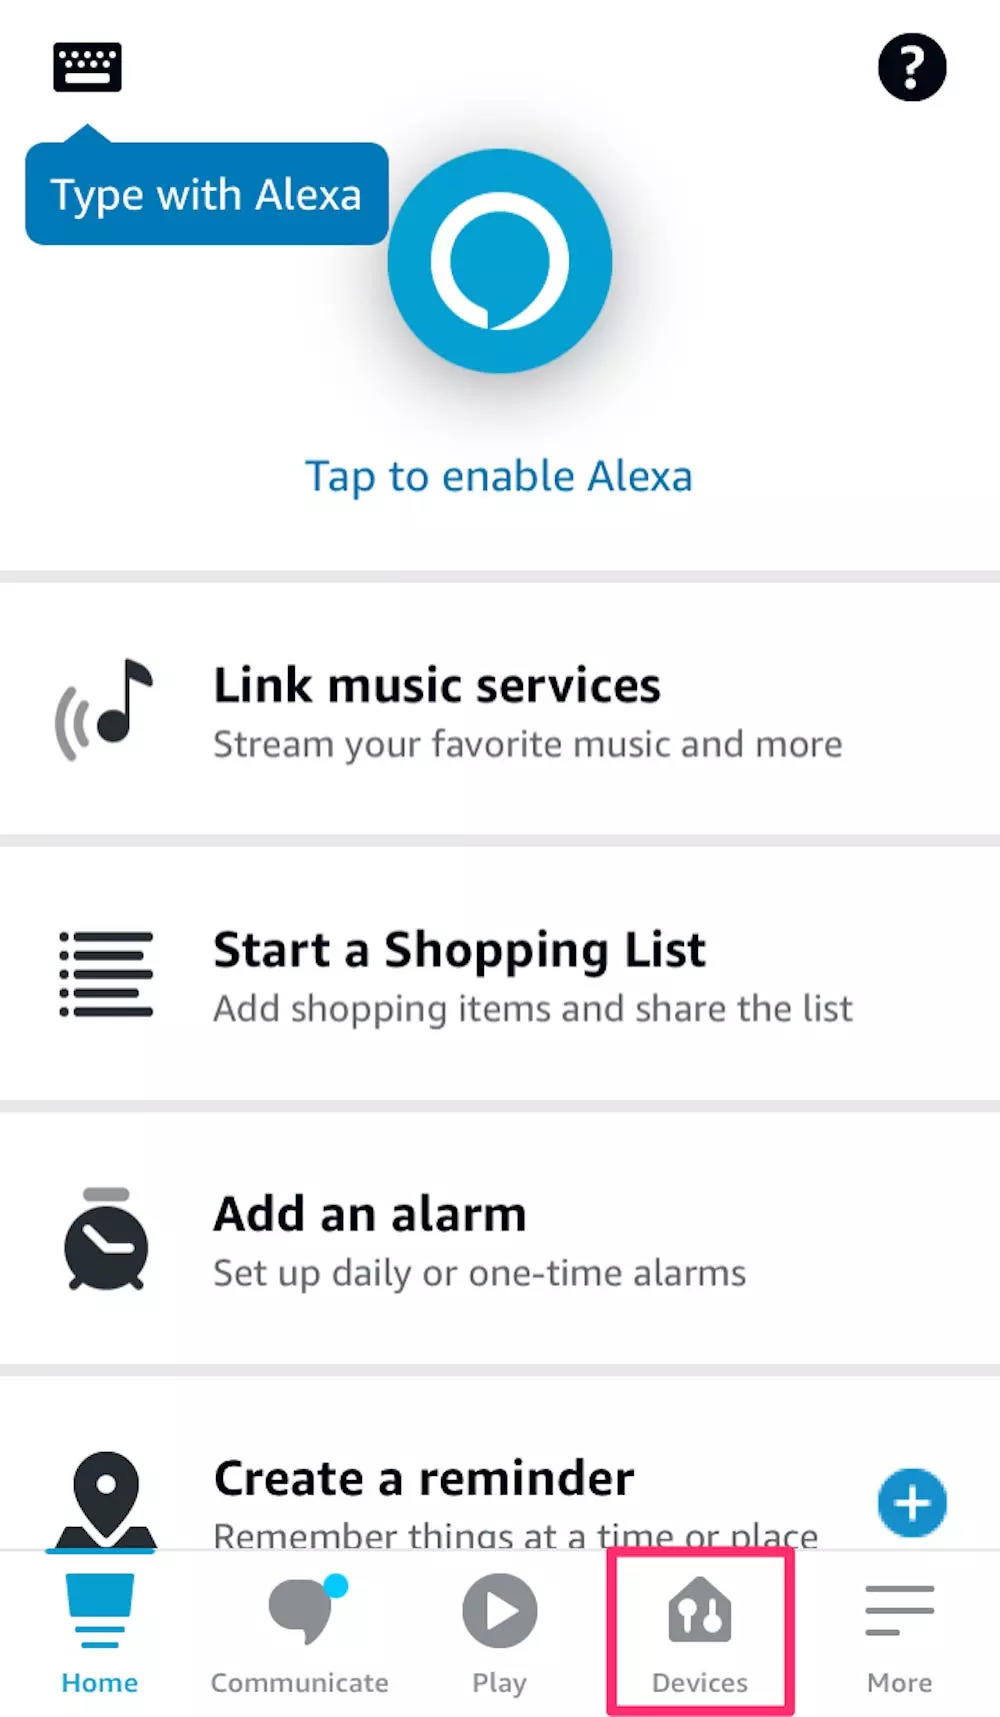 ¿Cómo conecto mi teléfono a Alexa sin la aplicación?